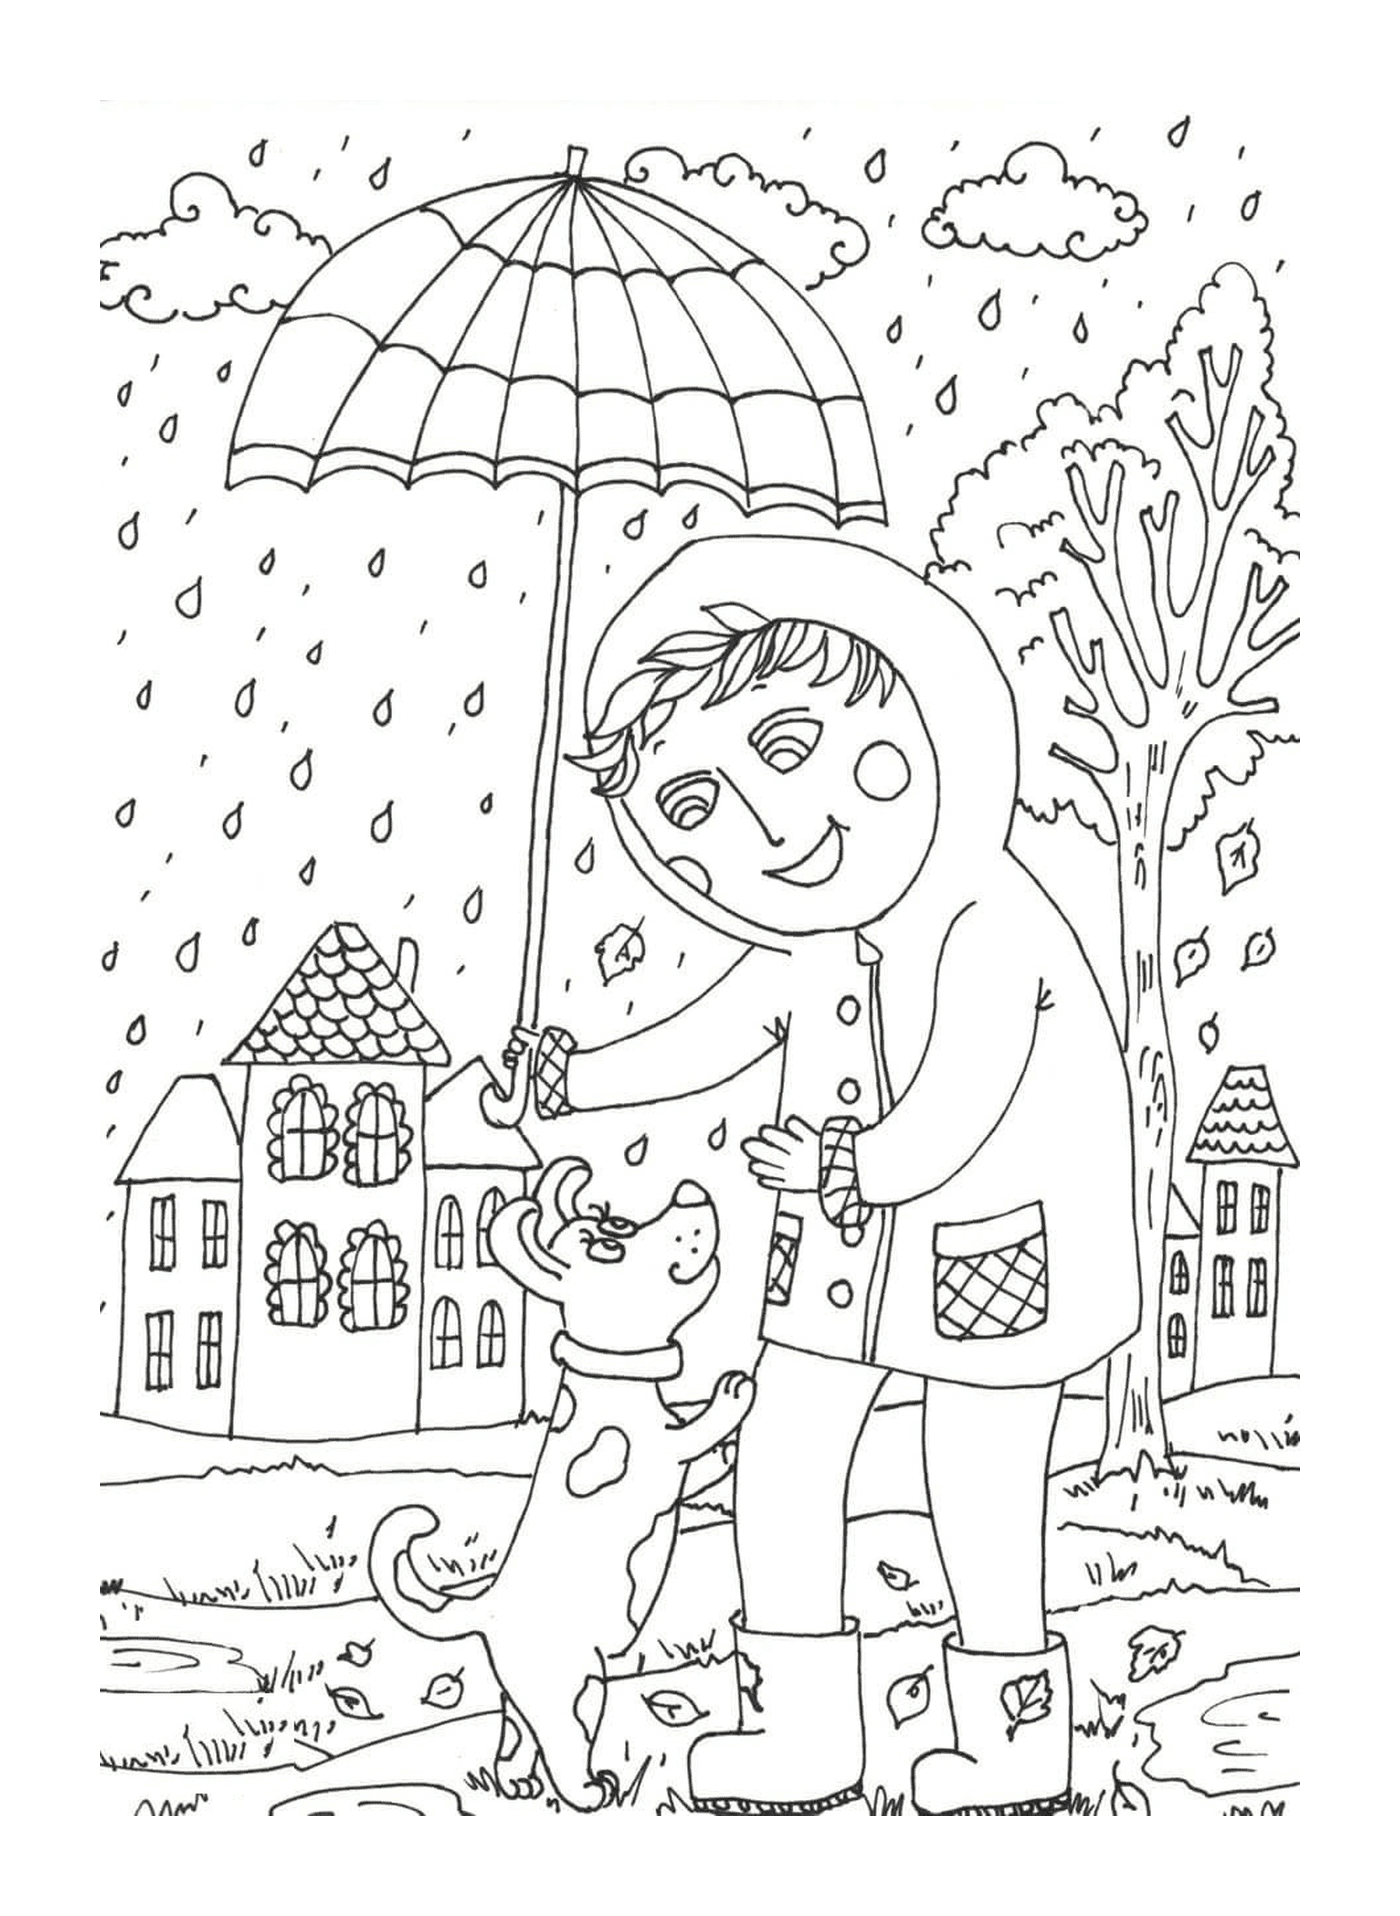  A child holding an umbrella above a dog 